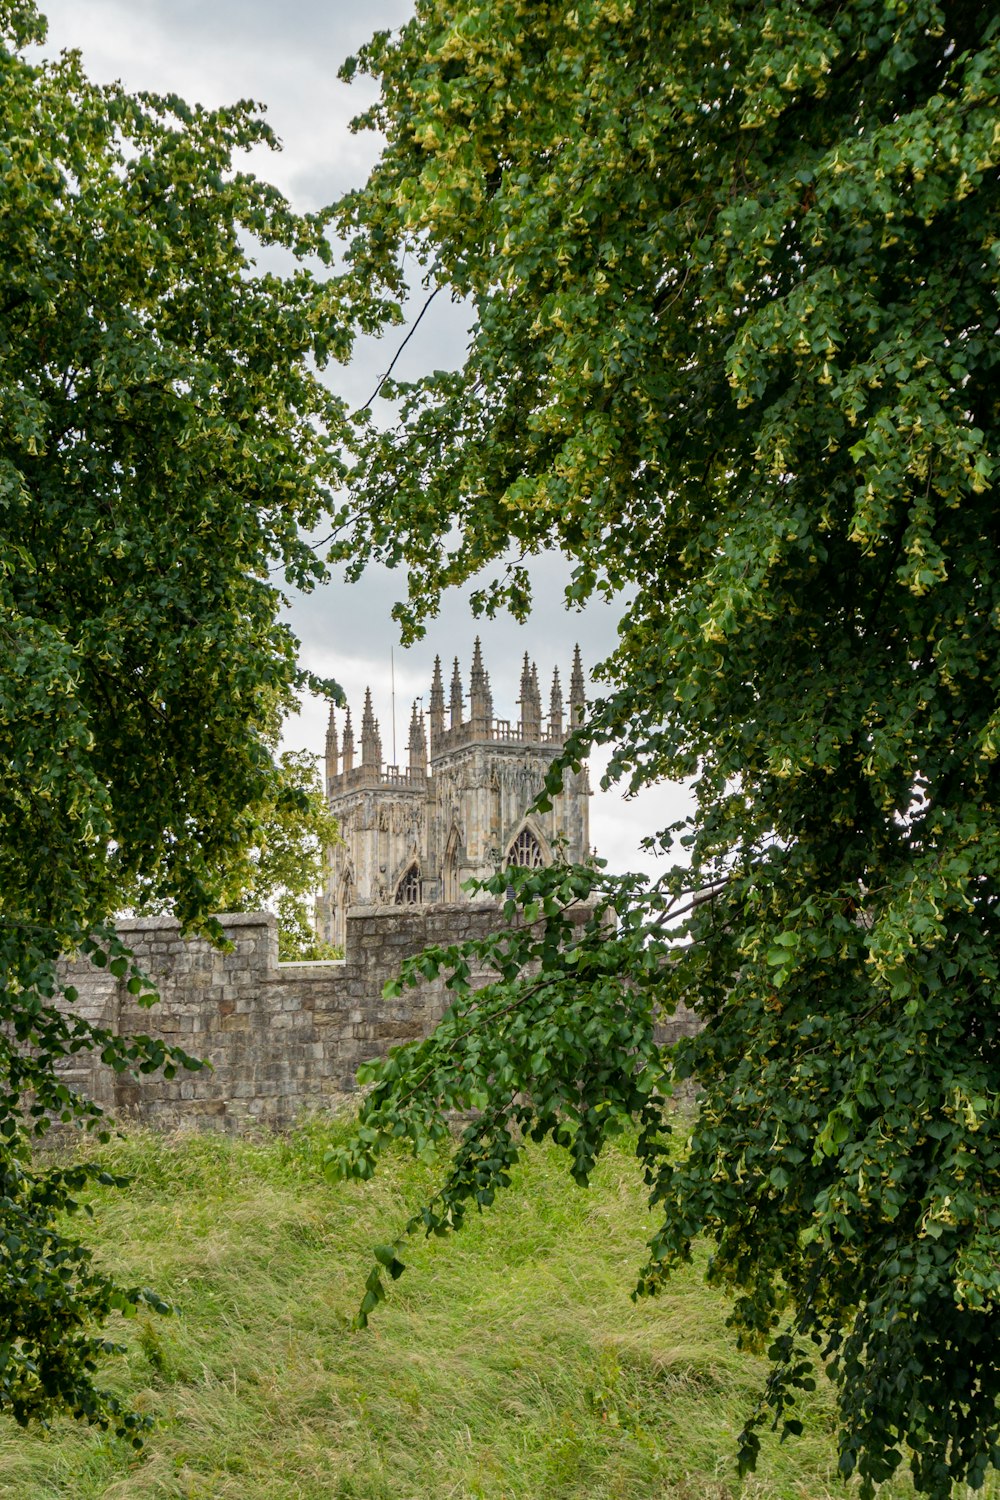 castle near trees